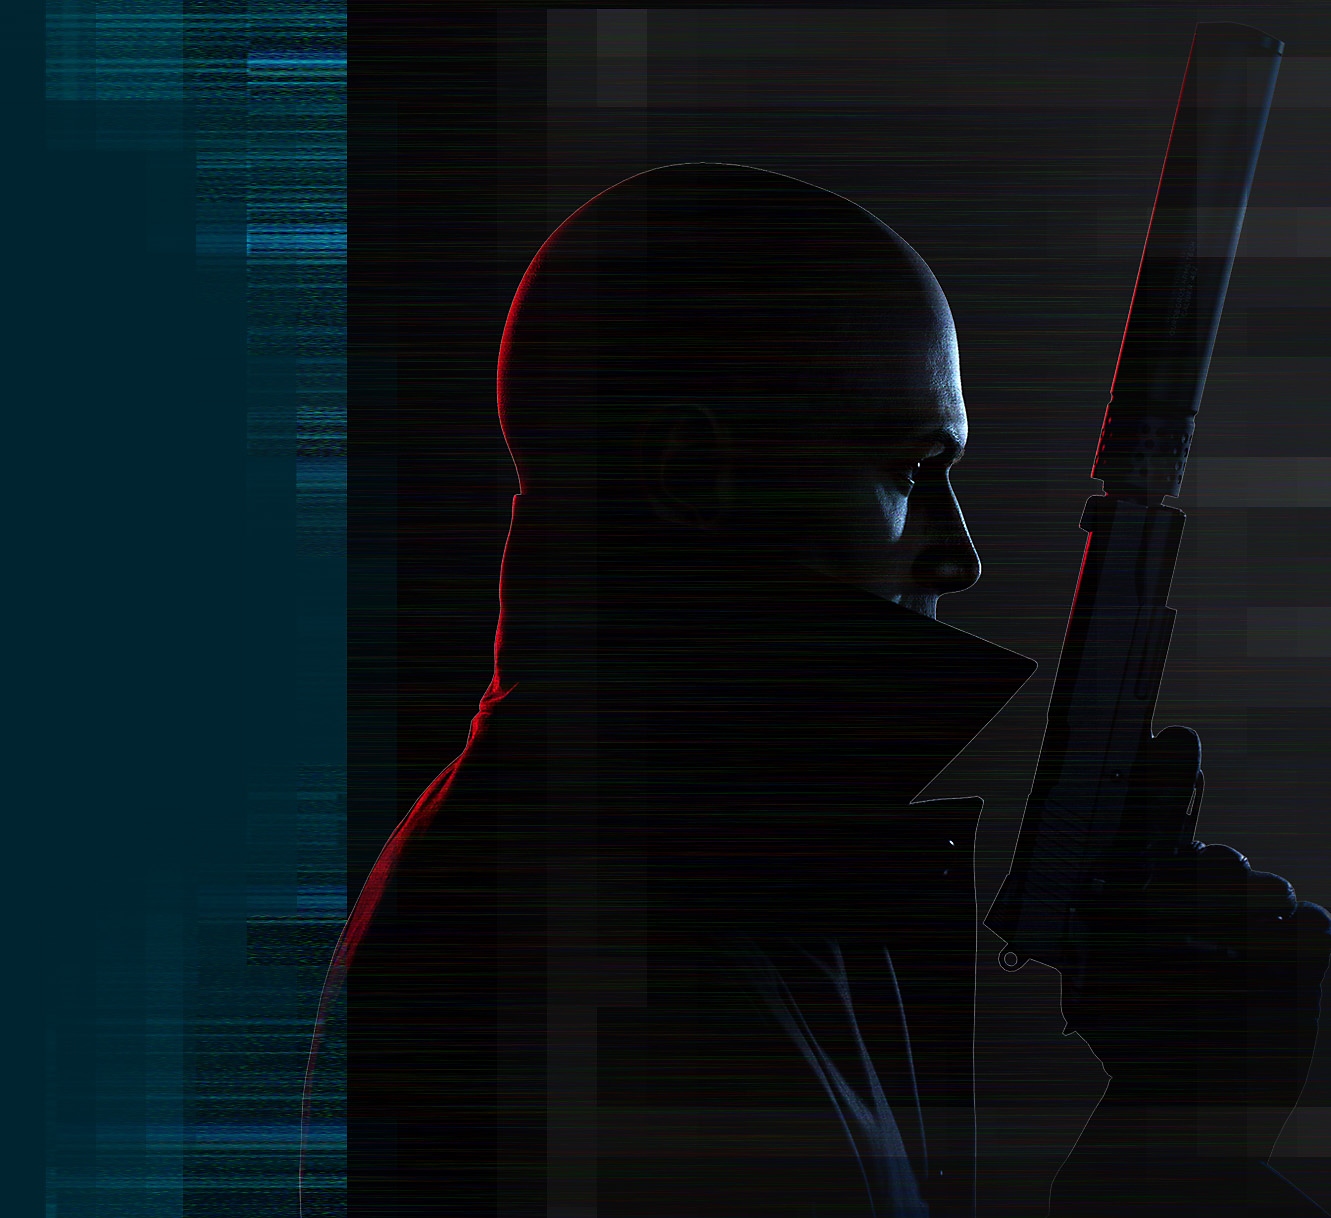 Художествено представяне на героя „Агент 47“ от Hitman 3, който държи пистолет със заглушител